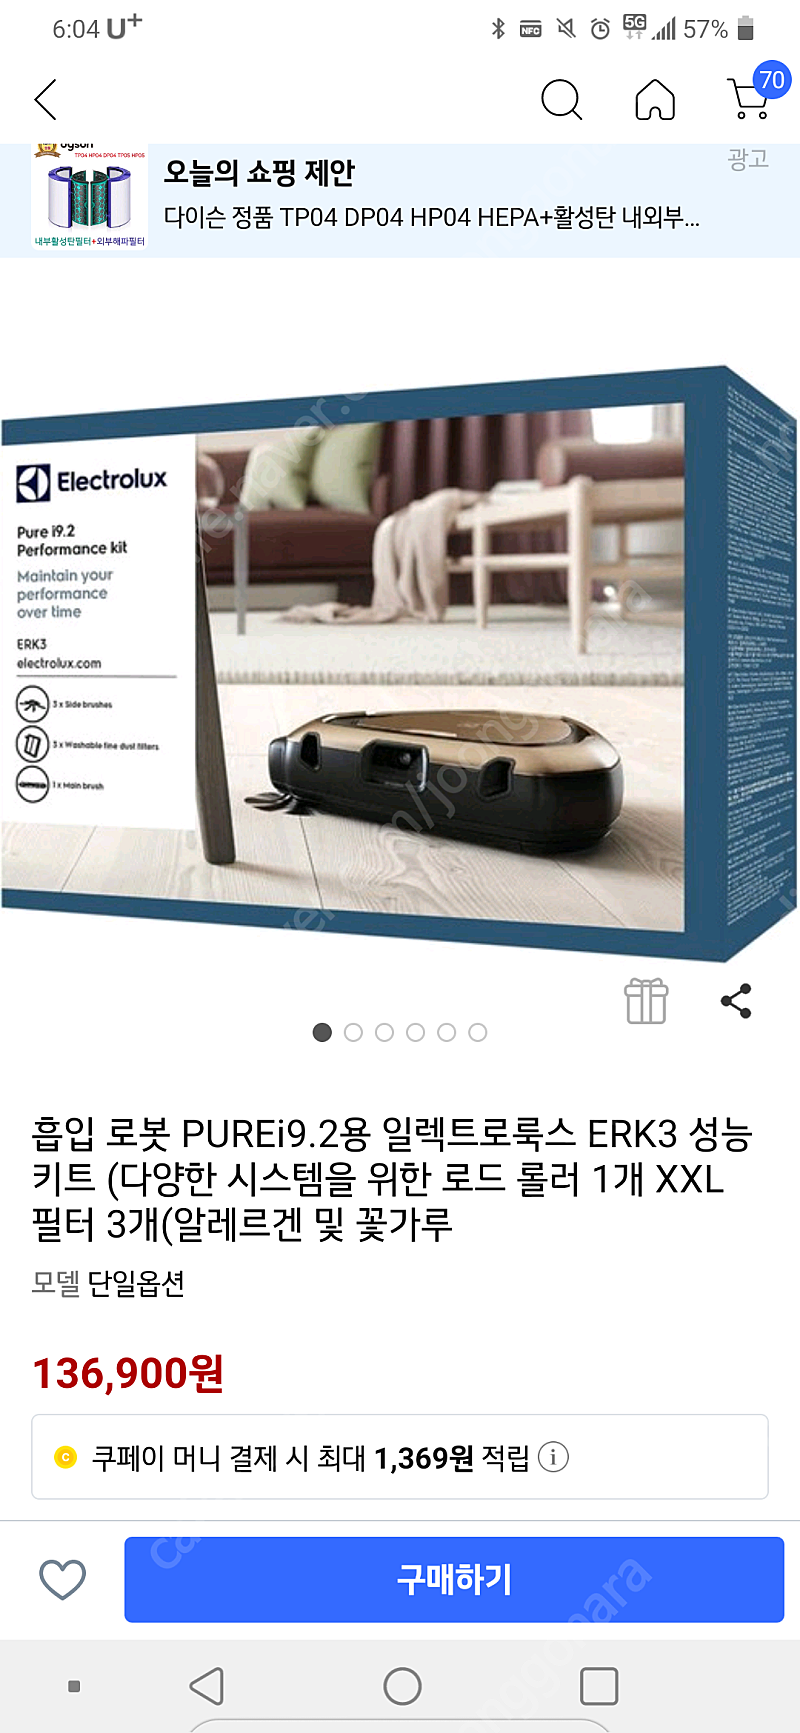 일렉트로룩스 로봇청소기 PURE I9.2 퍼포먼스키트 판매 택포40,000원 (ERK3)